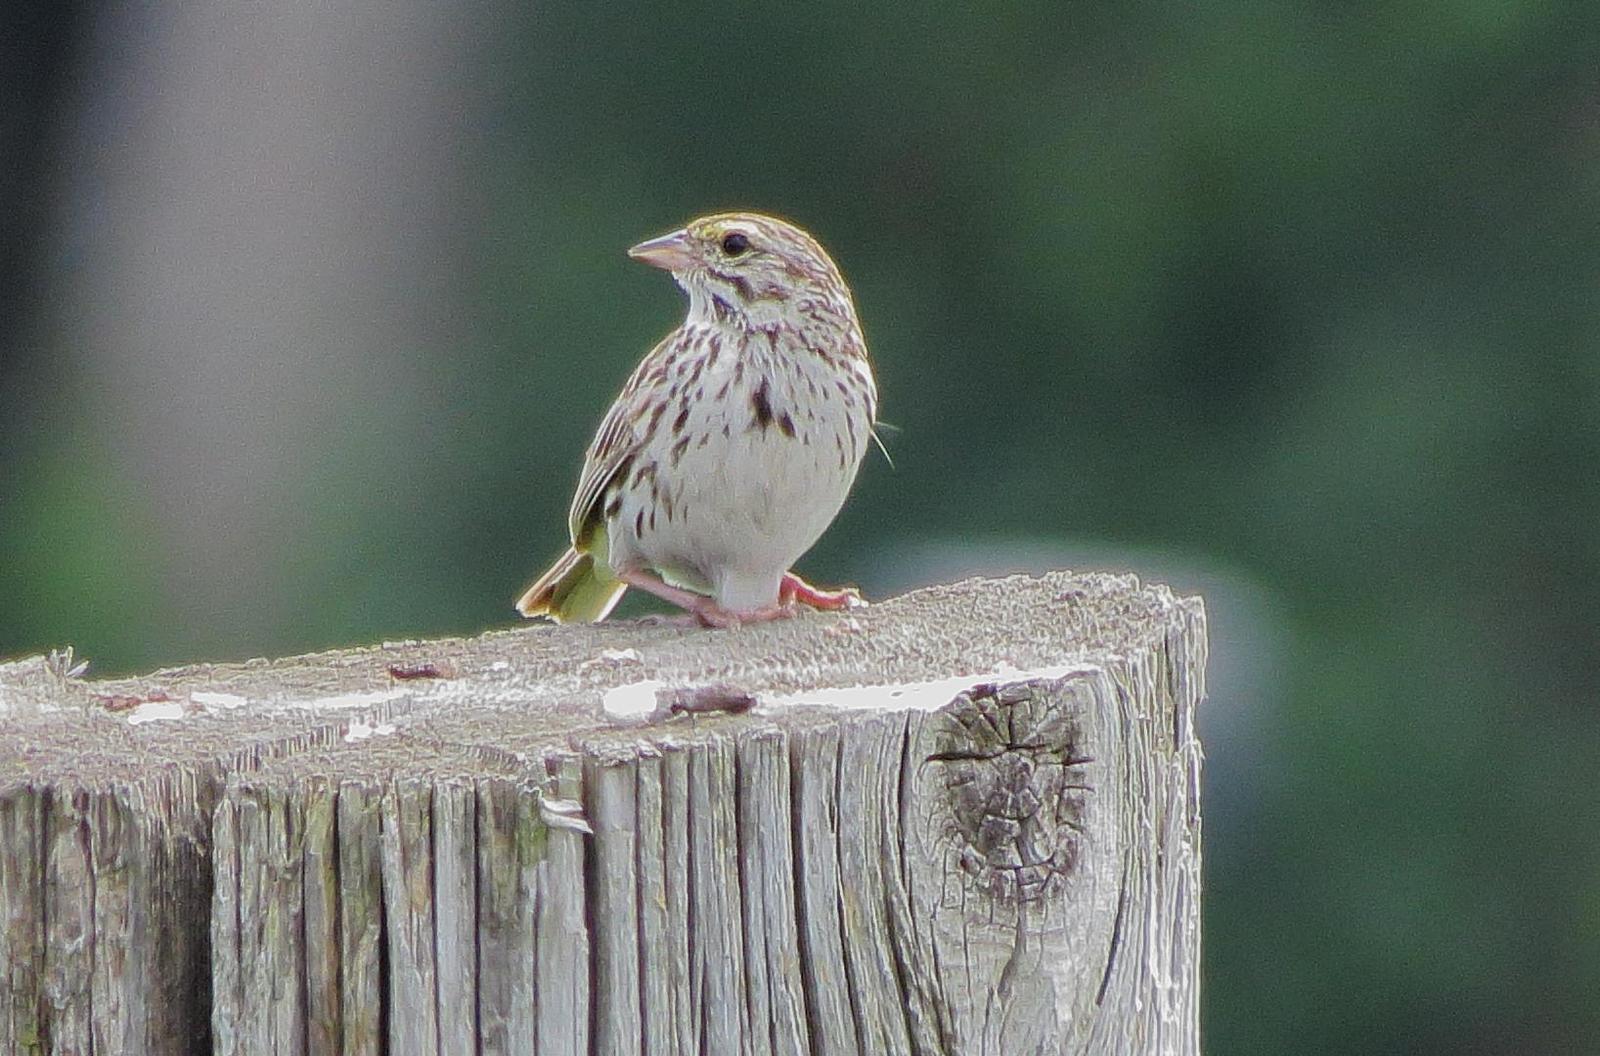 Savannah Sparrow (Eastern) Photo by Kent Jensen